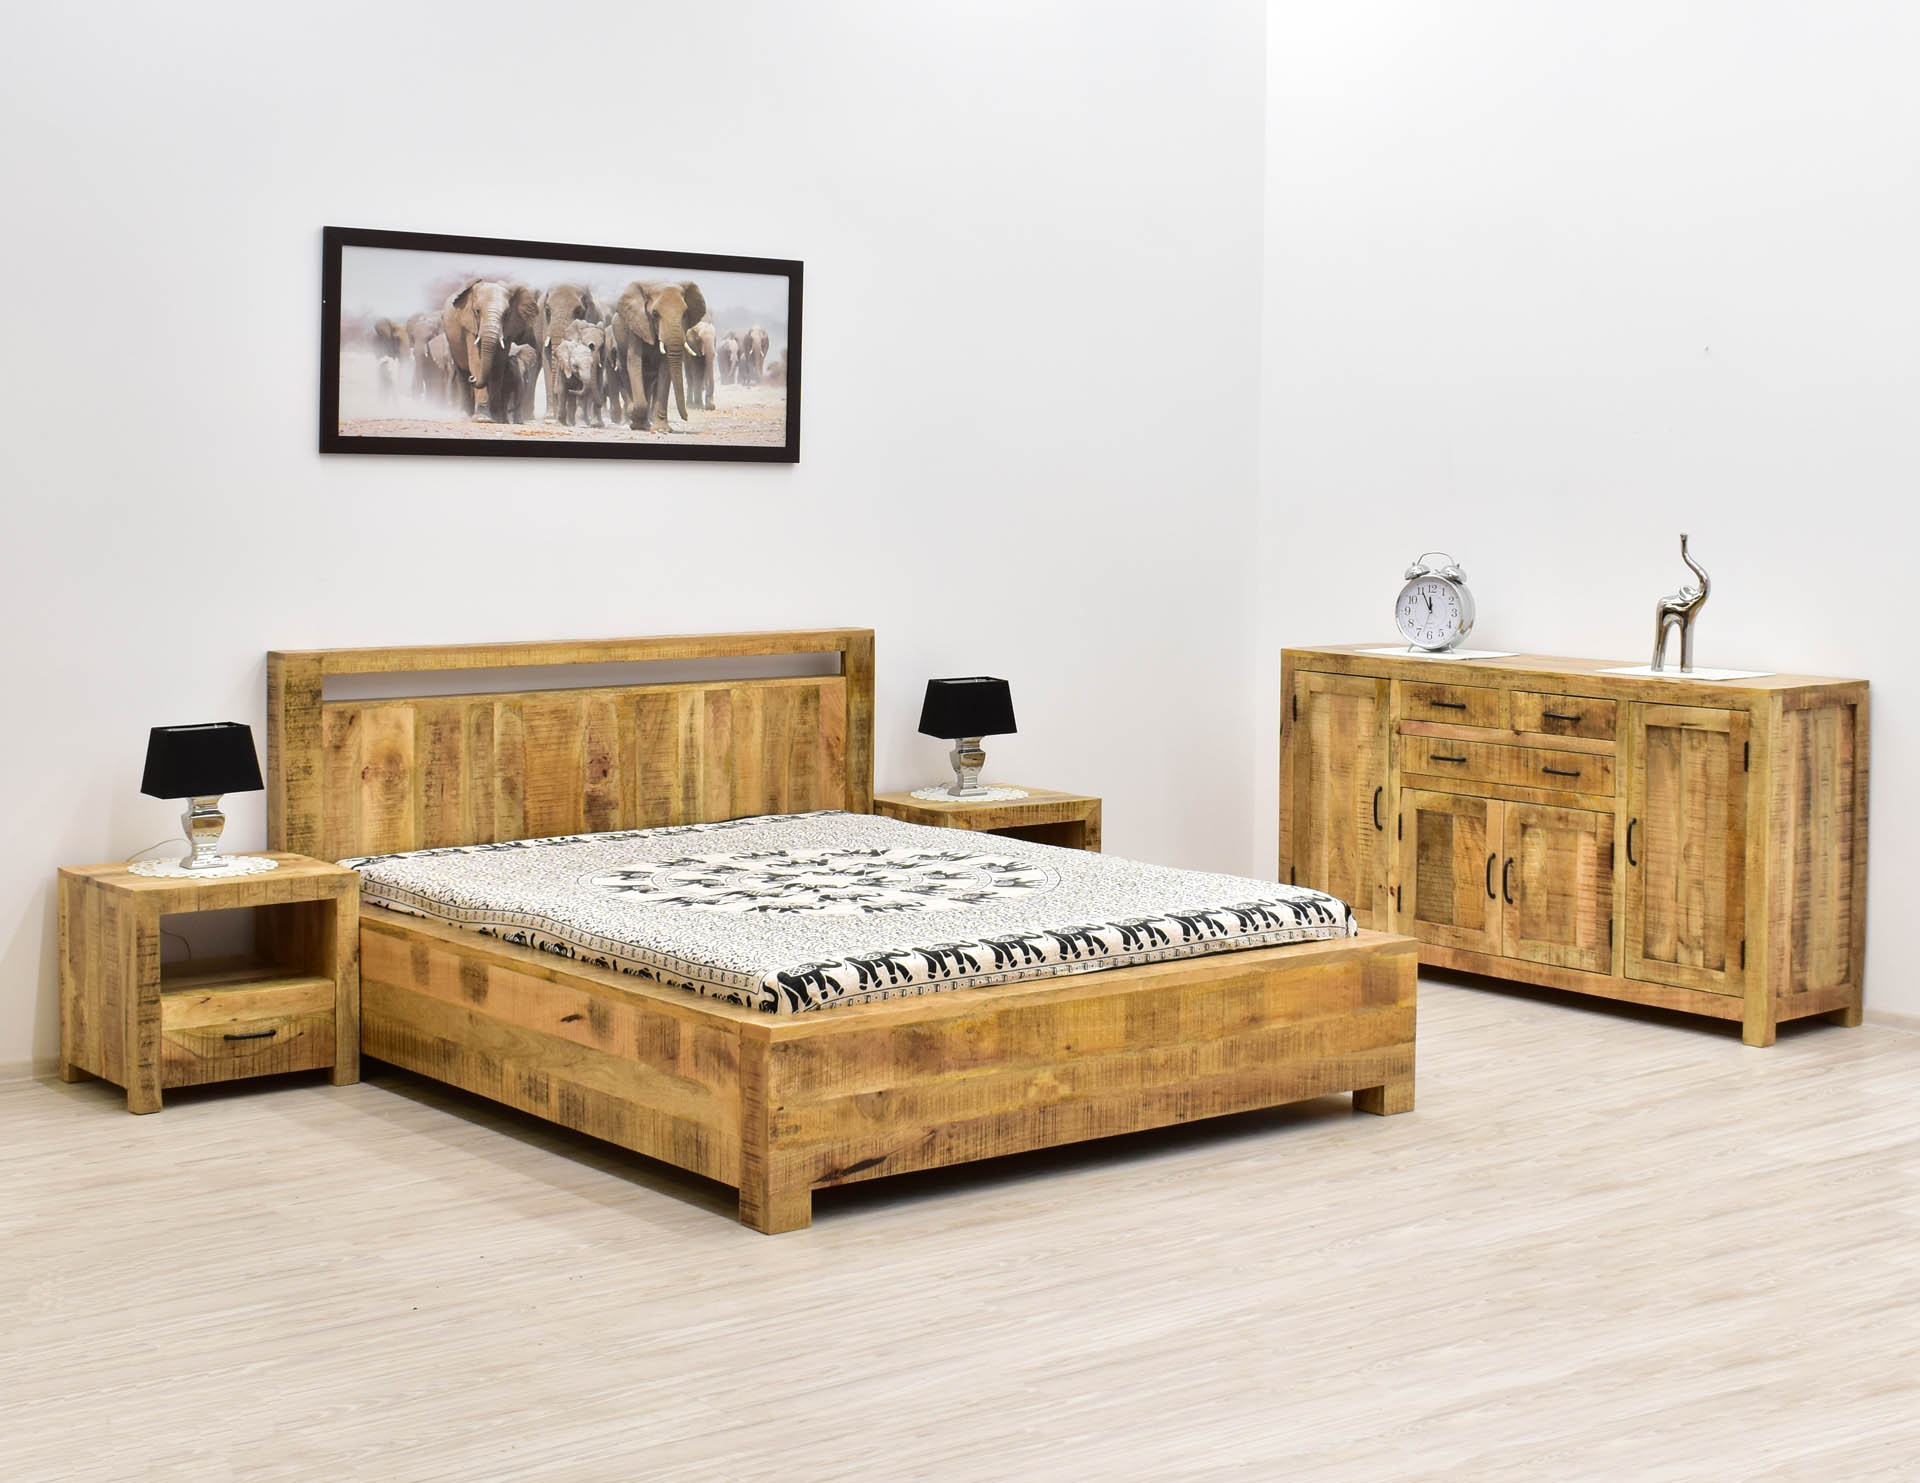 Sypialnia kolonialna z litego drewna mango w stylu loft: łóżko, szafki nocne, komoda.